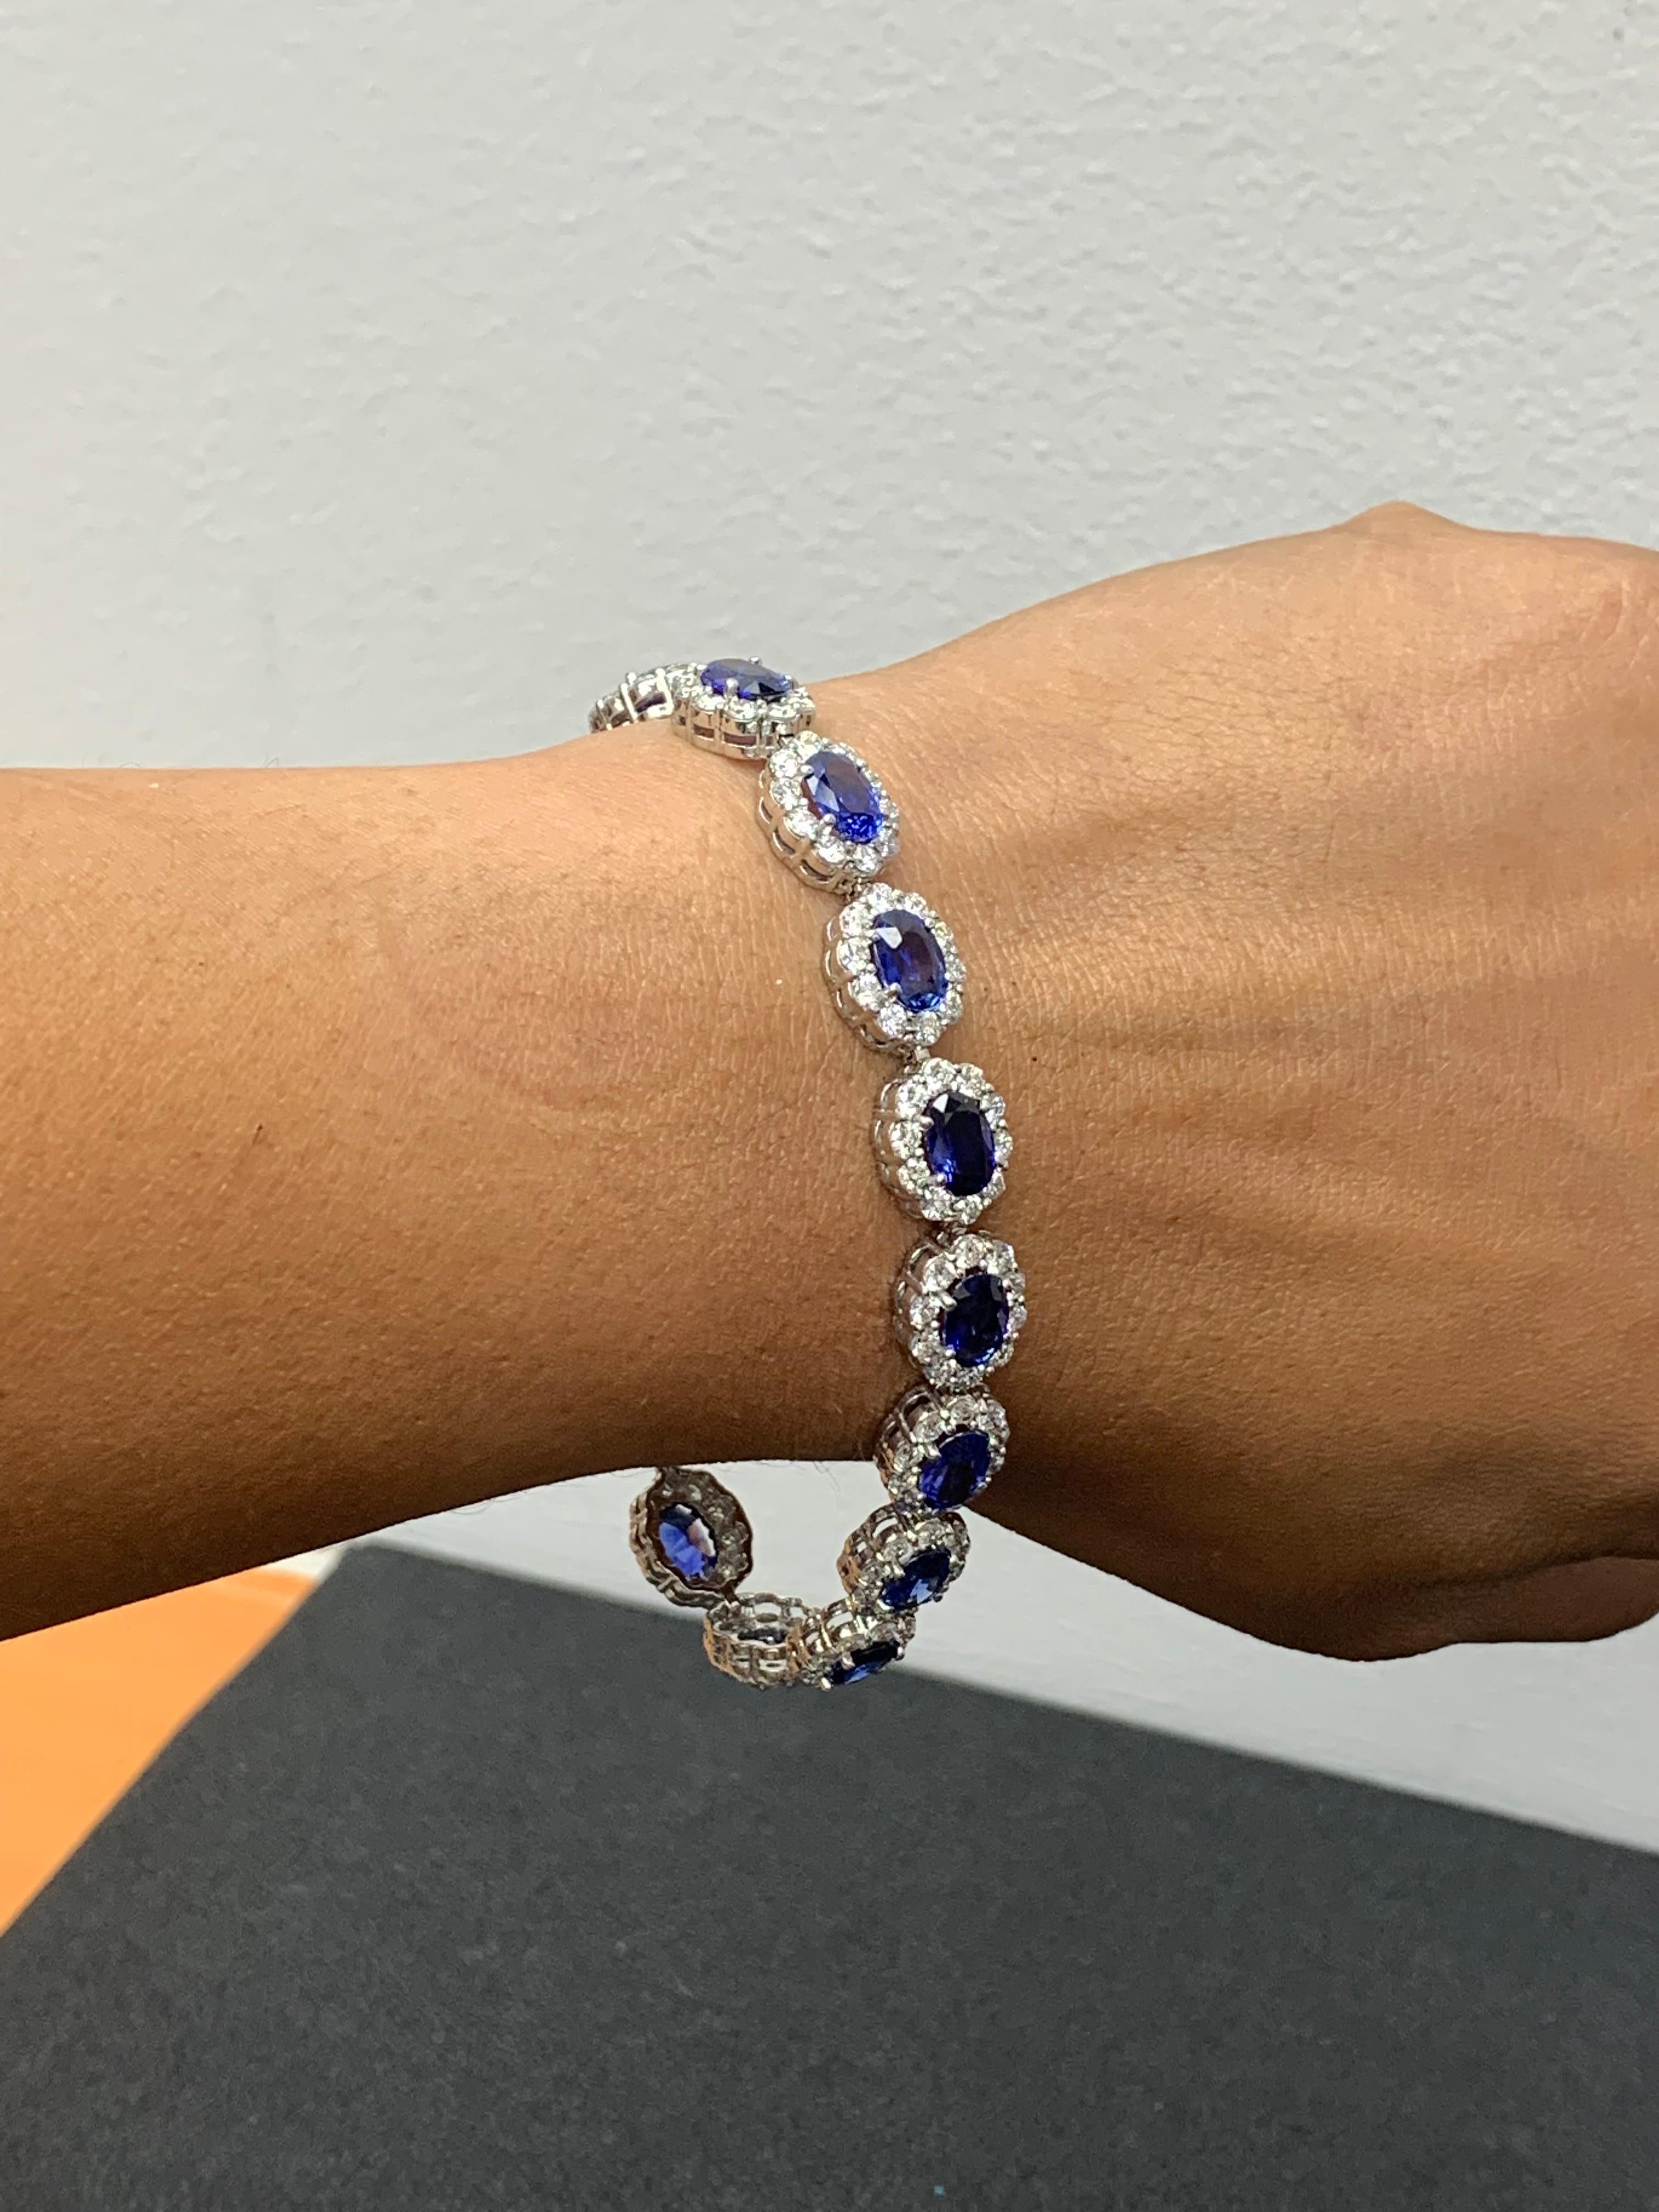 Ein wunderschönes Armband aus blauem Saphir und Diamanten mit farbenprächtigen blauen Saphiren, umgeben von einer einzigen Reihe runder Brillanten. 16 blaue Saphire im Ovalschliff wiegen insgesamt 13,88 Karat; 160 Diamanten mit Akzent wiegen